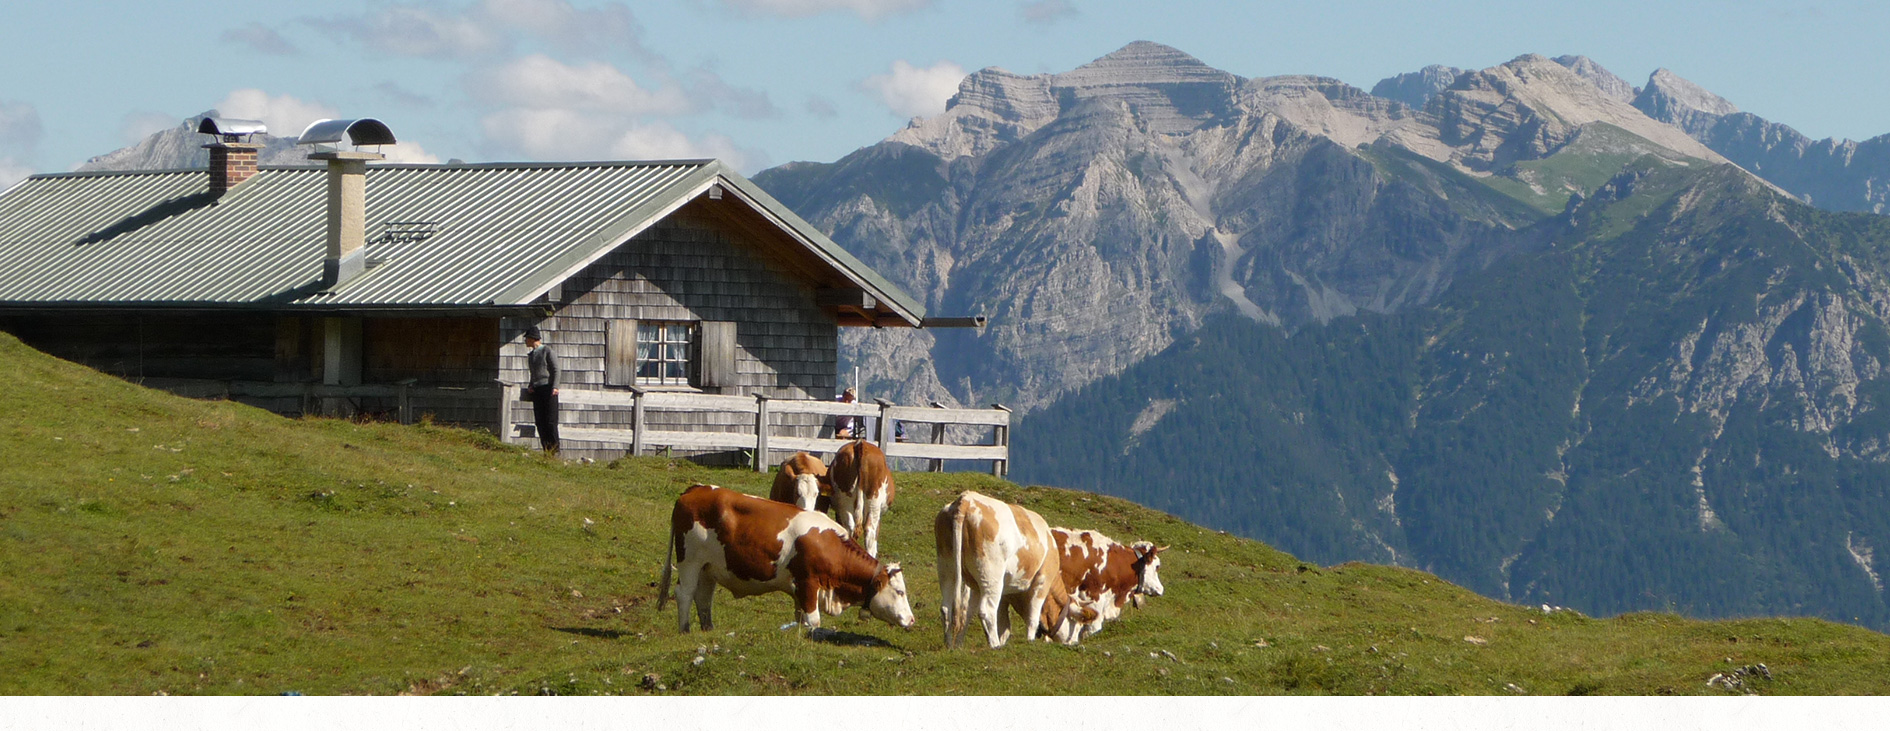 Gästezimmer - Urlaub in Bayern - Alpenwelt Karwendel - Gästehaus Alpengruß